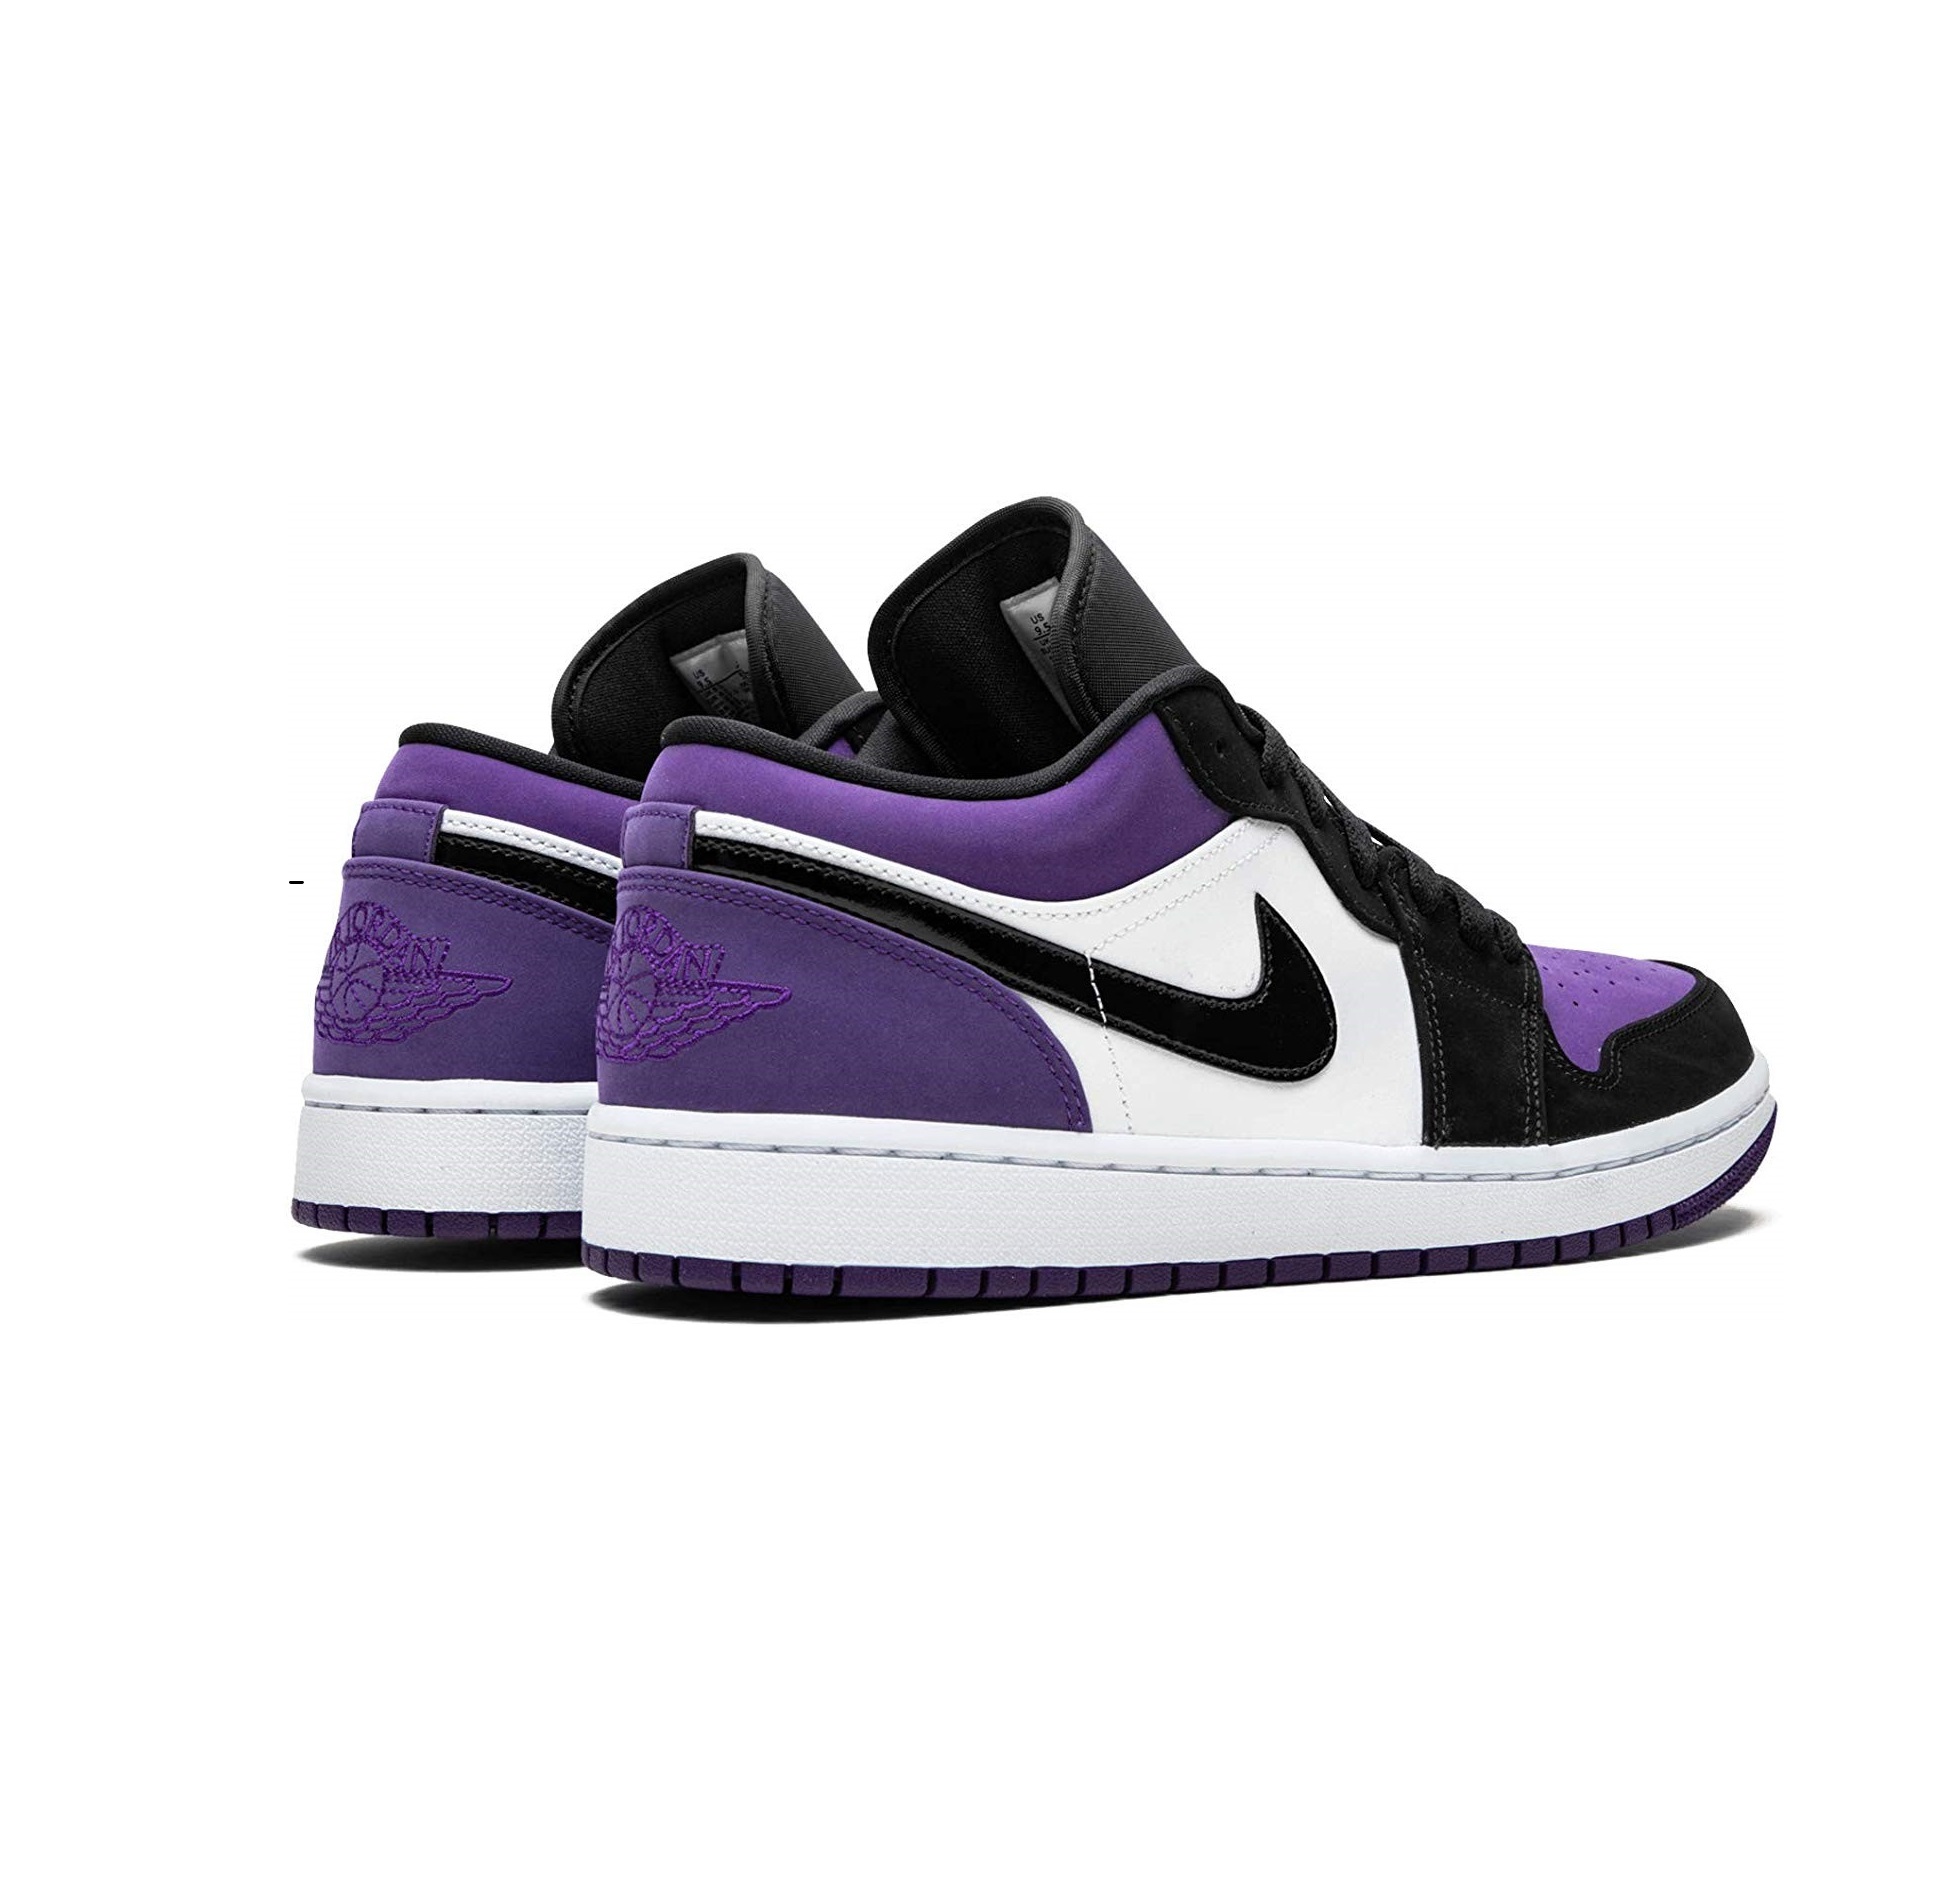 Низкие джорданы 1. Nike Air Jordan 1 Low Court Purple White. Nike Air Jordan 1 Low Court Purple. Nike Air Jordan 1 Low Purple. Nike Jordan 1 Low Purple White.